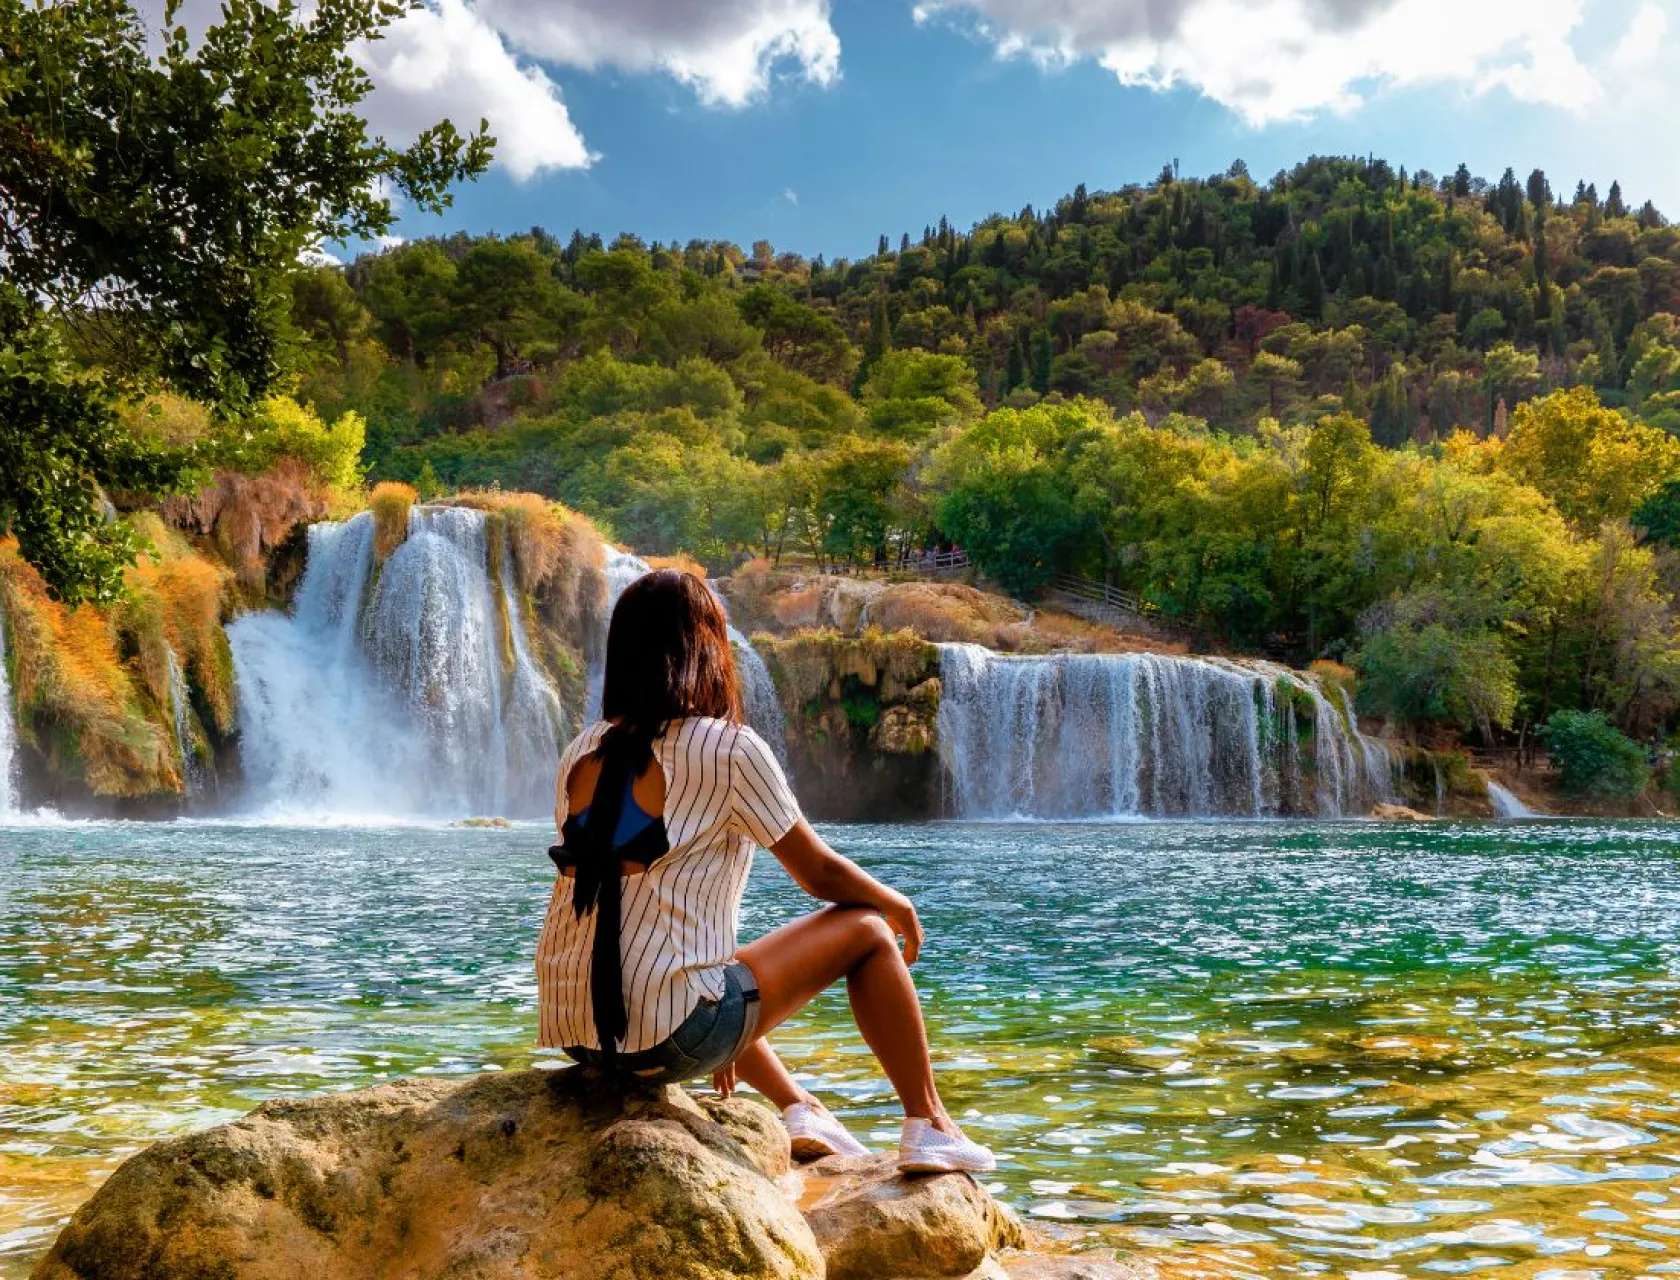 Croatia national parks